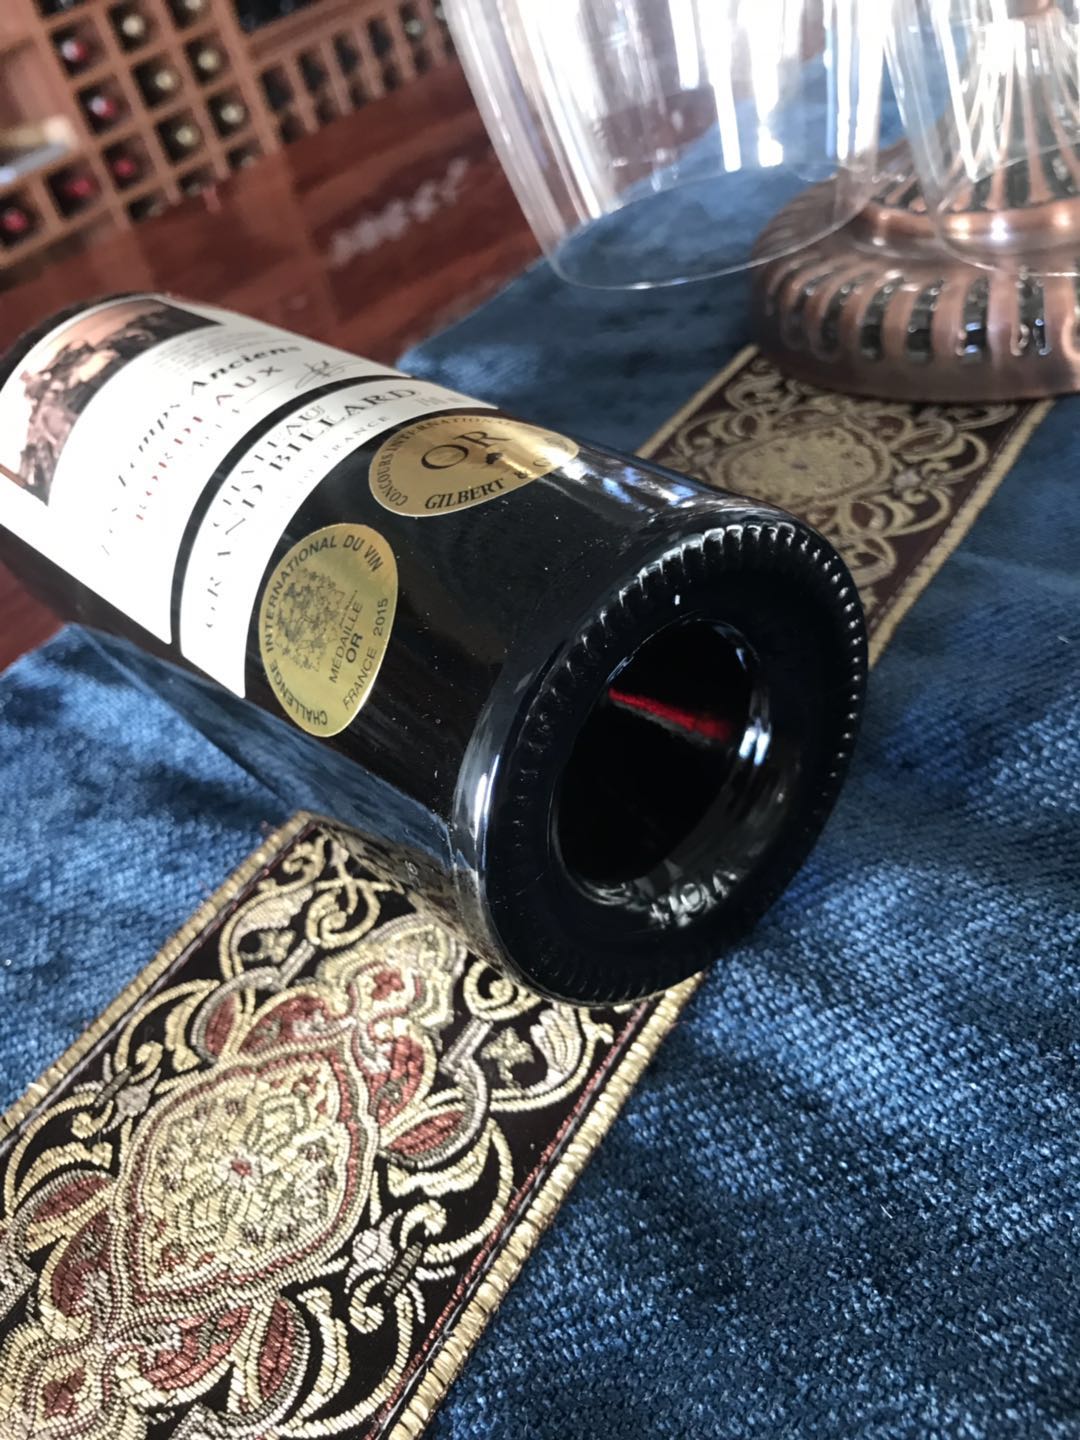 法国进口大贝拉德古堡干红葡萄酒法国进口大贝拉德古堡干红葡萄酒